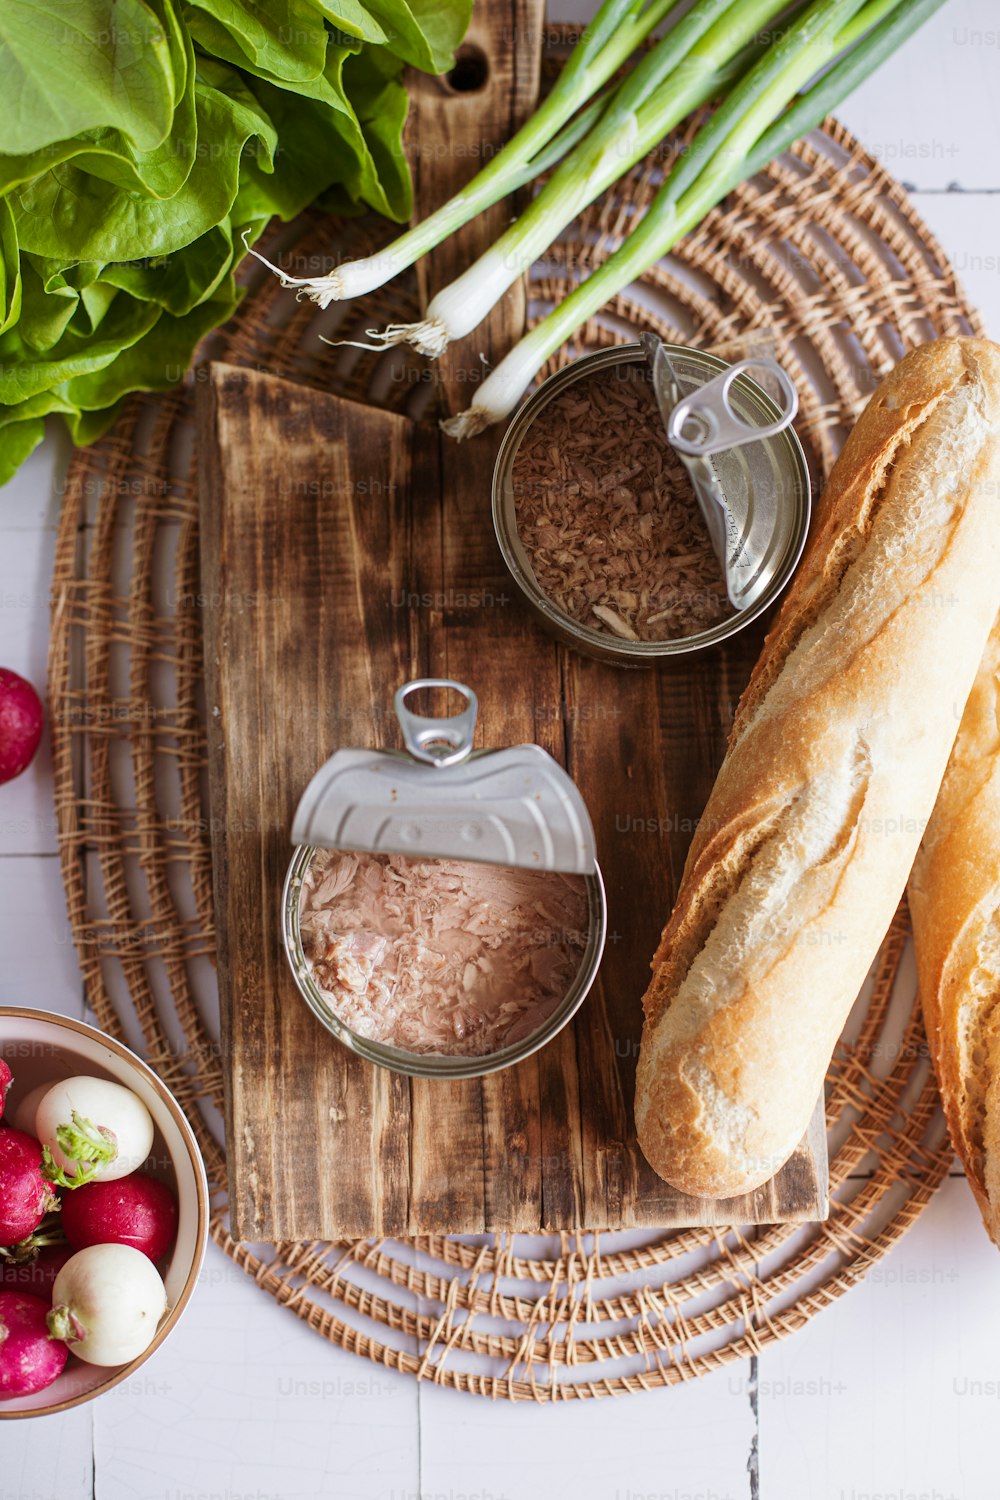 Pan, rábanos y otros ingredientes en una bandeja de madera